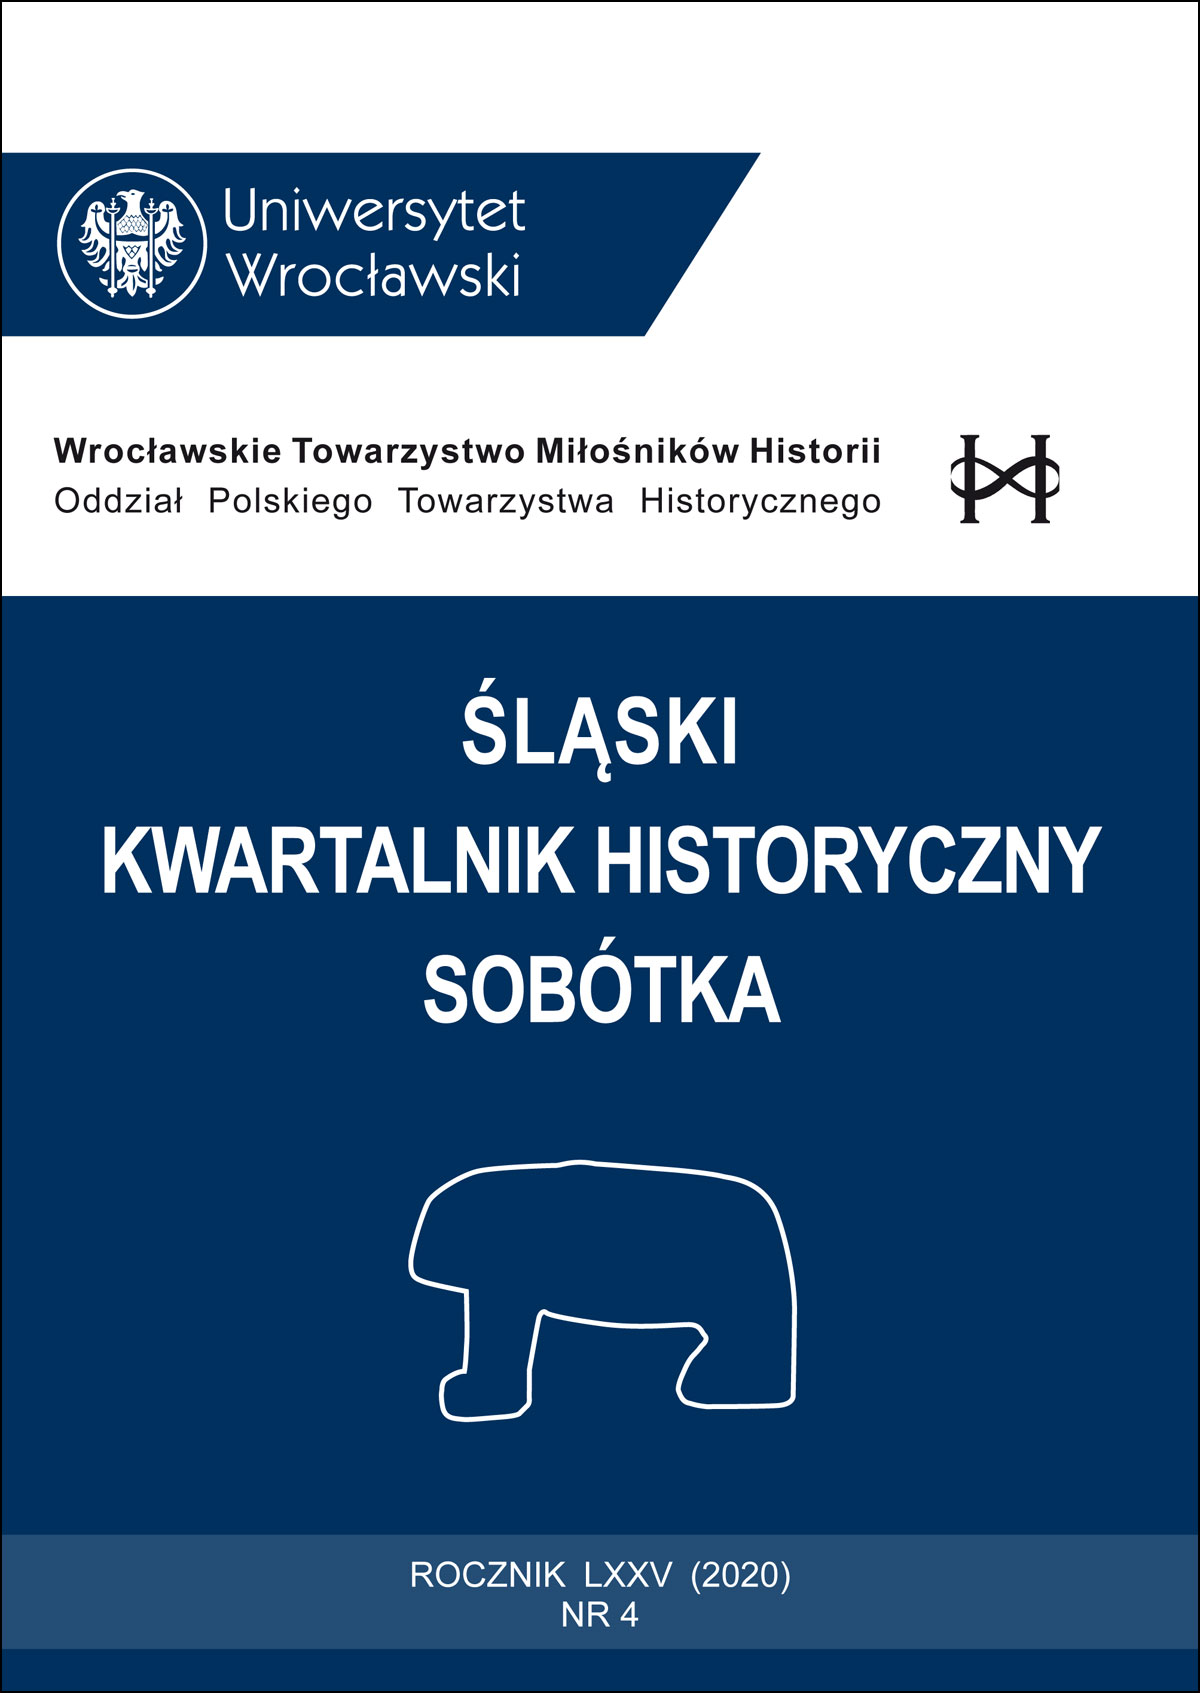 Wrocławska rotunda Panoramy Racławickiej: historia, koncepcja i forma